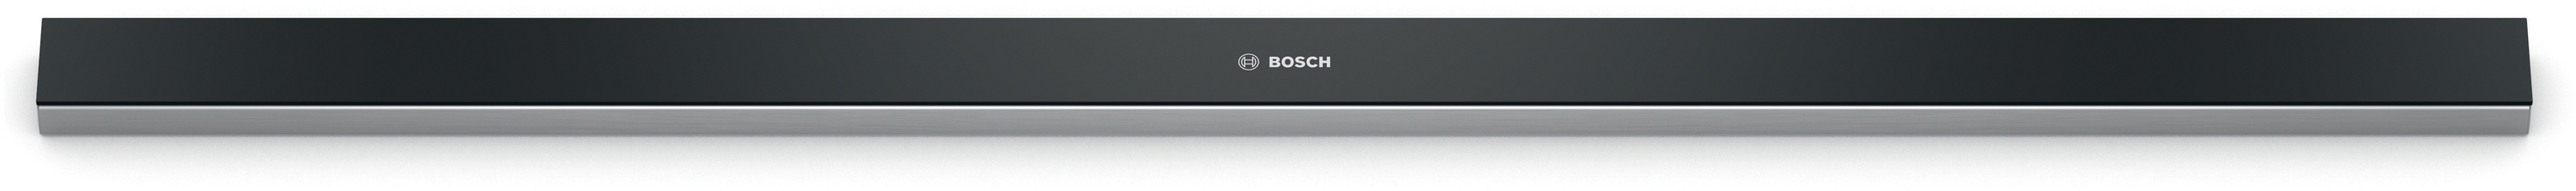 Bosch DSZ4986 Dekorační lišta